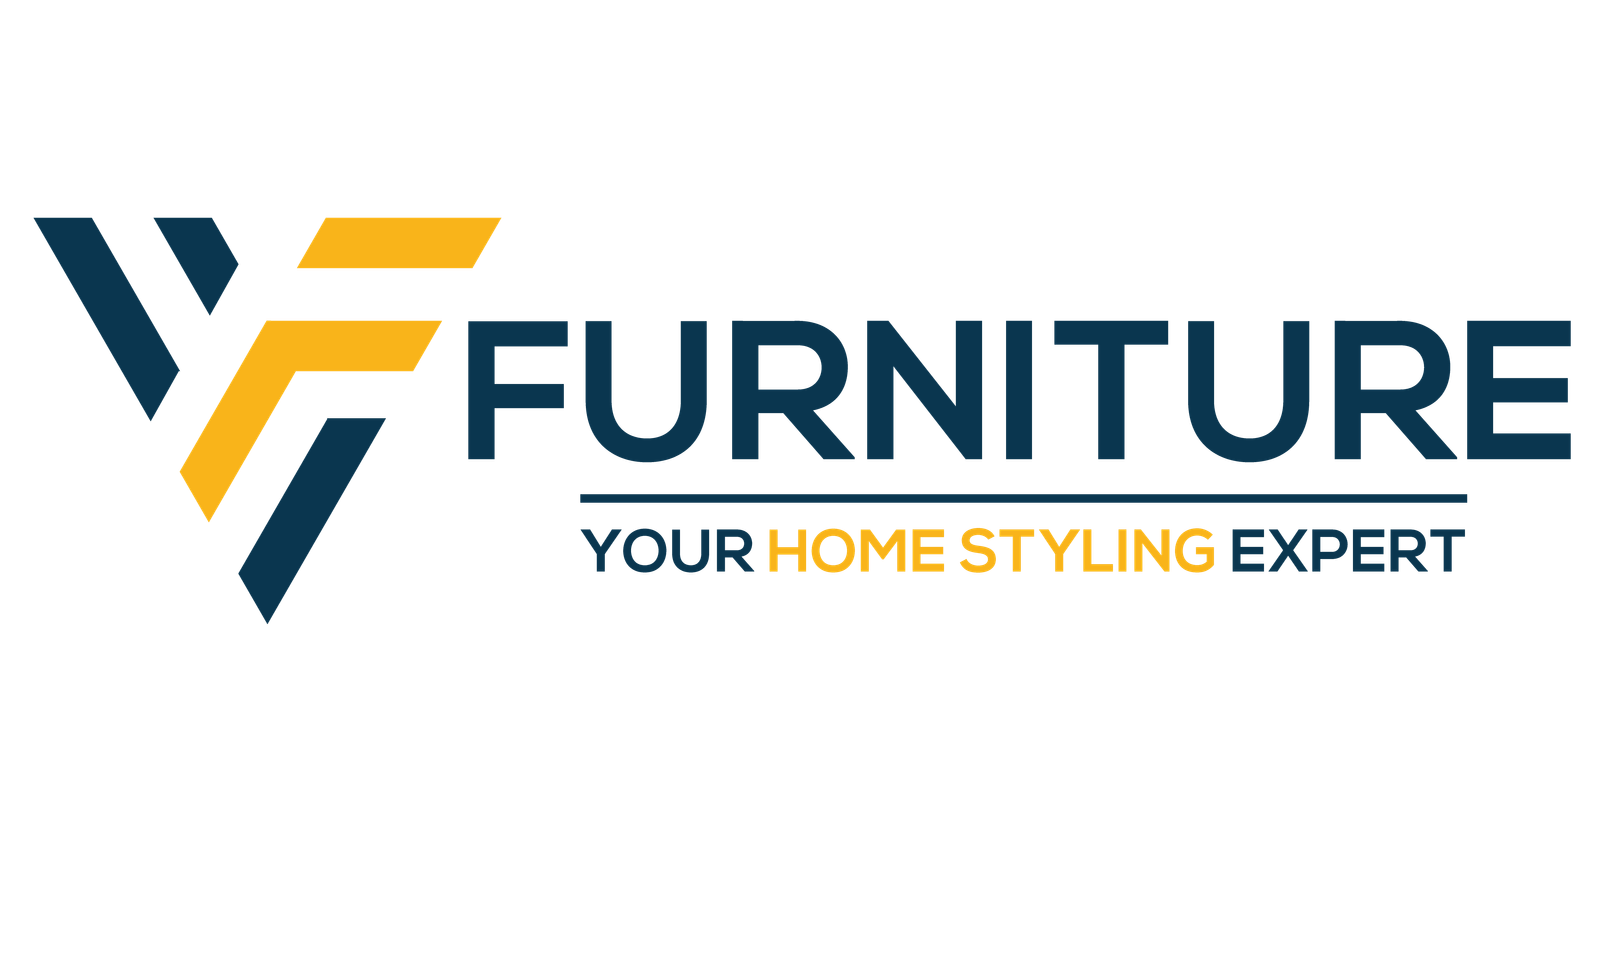 Vfurniture Logo